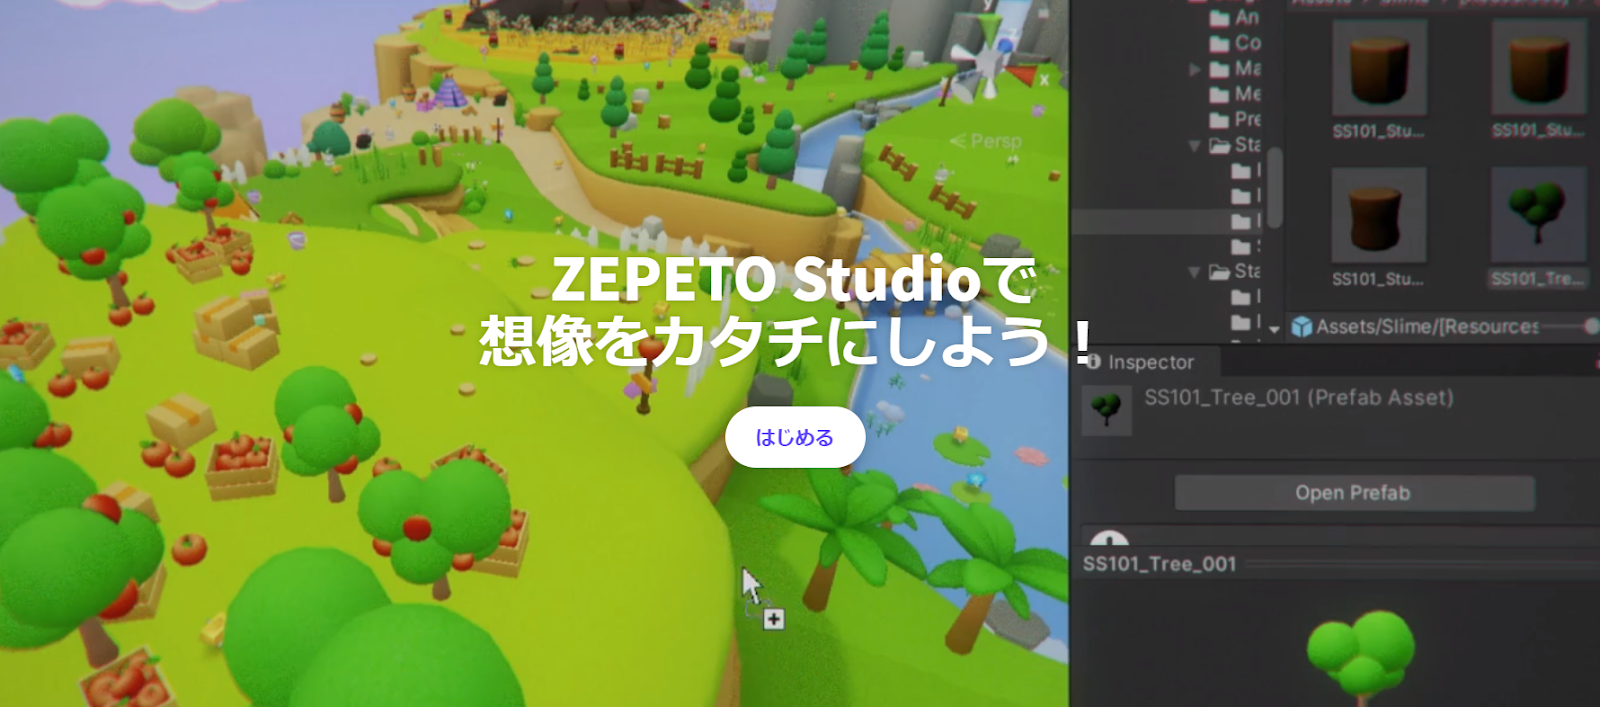 ZEPETO 多くのユーザーがクリエイターとしてコンテンツを制作している